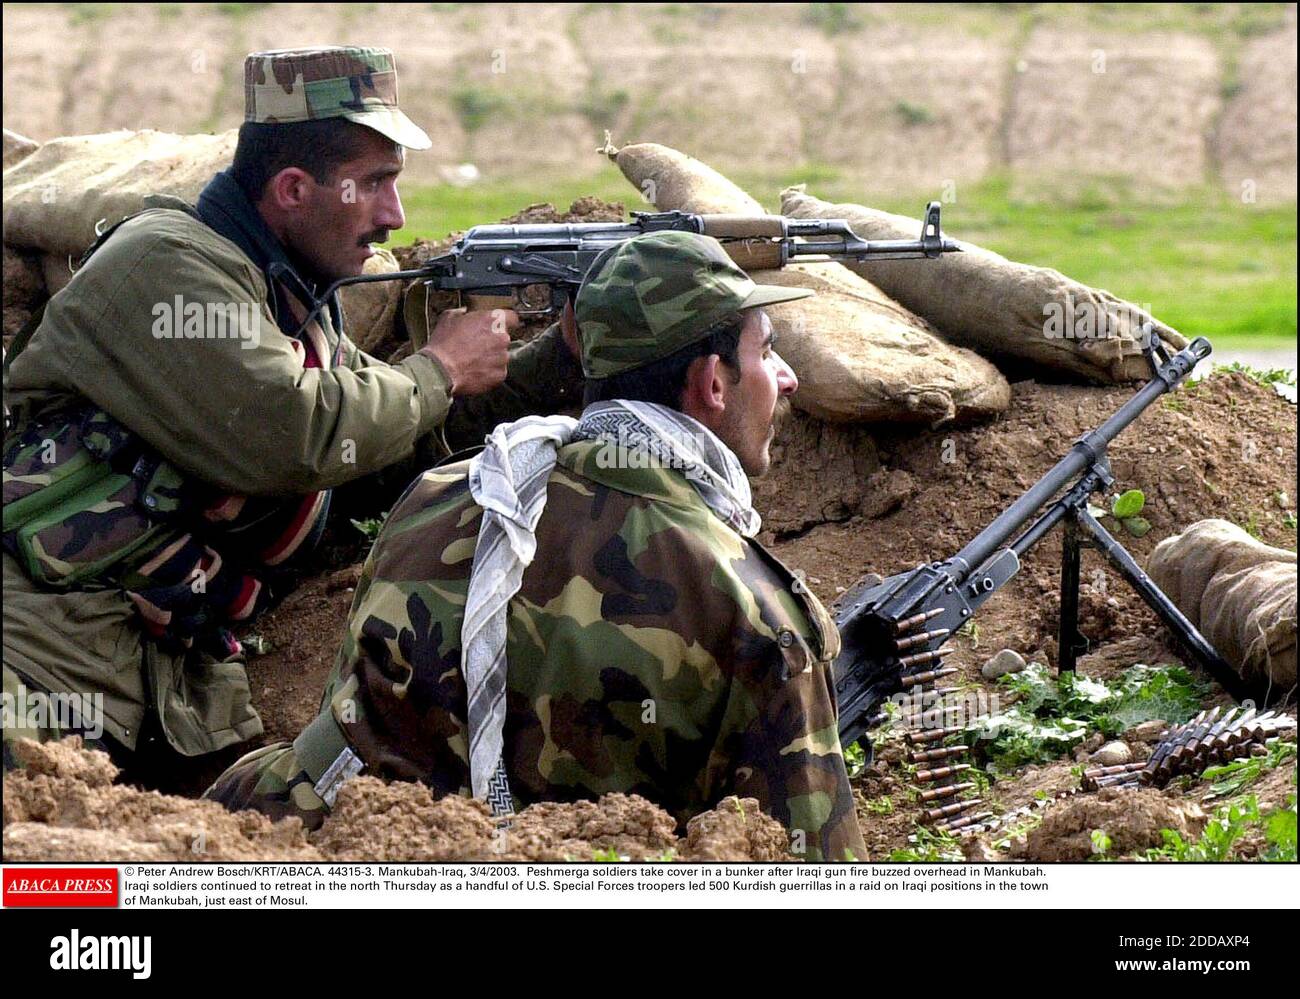 KEIN FILM, KEIN VIDEO, KEIN FERNSEHEN, KEIN DOKUMENTARFILM - © PETER ANDREW BOSCH/KRT/ABACA. 44315-3. Mankubah-Irak, 4. März 2003. Peschmerga-Soldaten decken sich in einem Bunker ab, nachdem irakisches Waffenfeuer in Mankubah über sich hereinschwirrte. Irakische Soldaten zogen sich am Norddonnerstag als eine Handvoll US-Spezialeinheiten weiter zurück Stockfoto